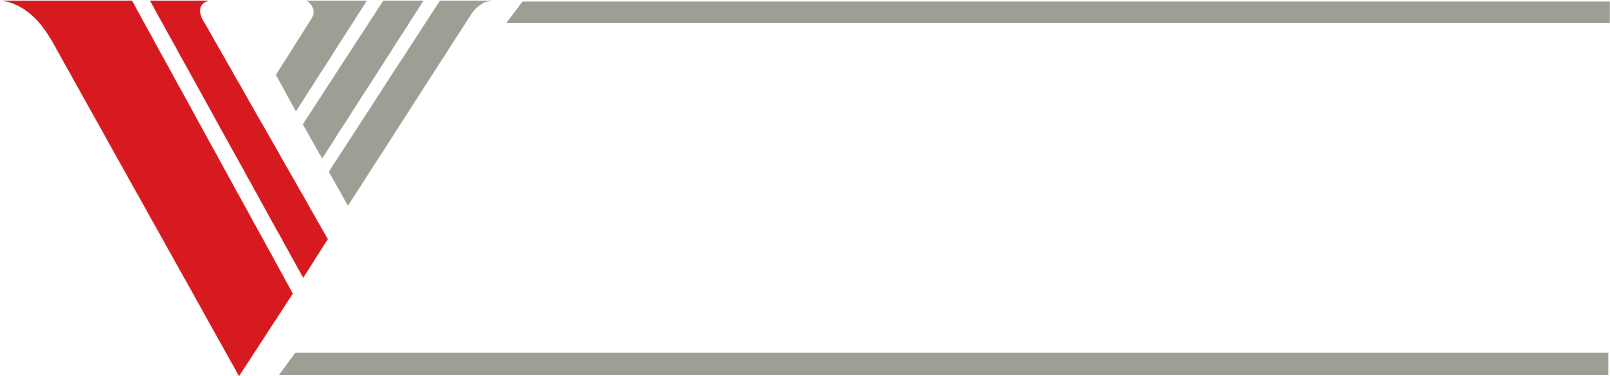 Venture Corporation logo grand pour les fonds sombres (PNG transparent)